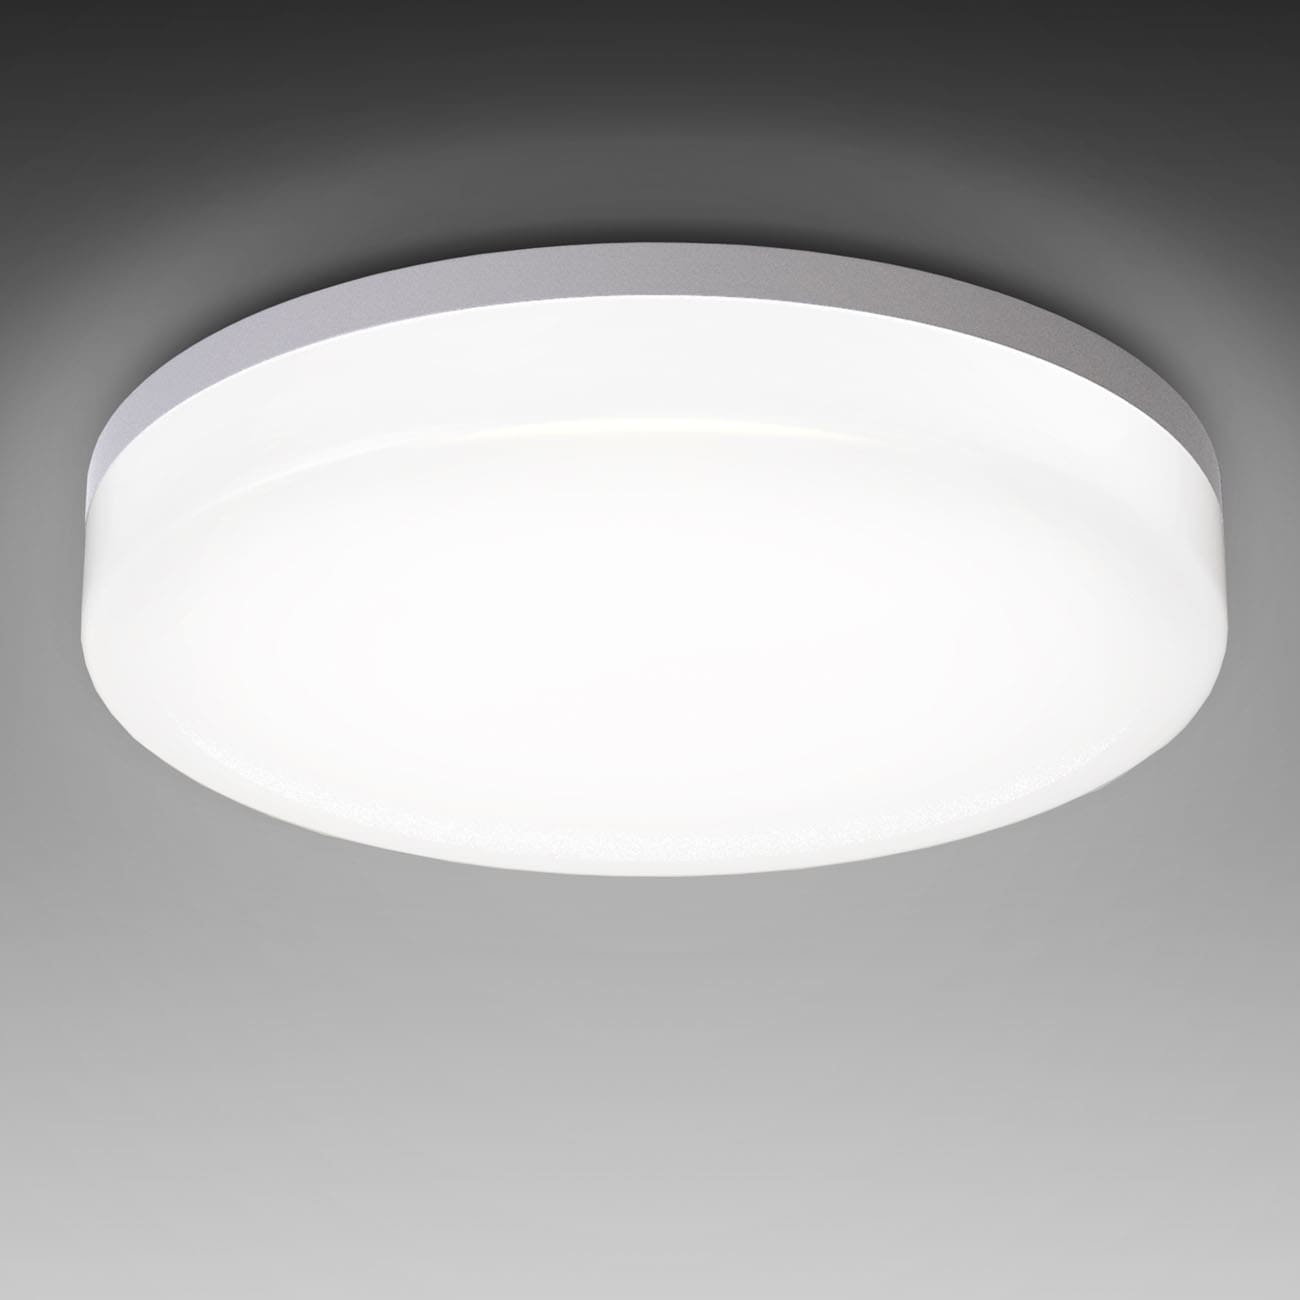 LED Deckenleuchte Badlampe IP54 M - 3